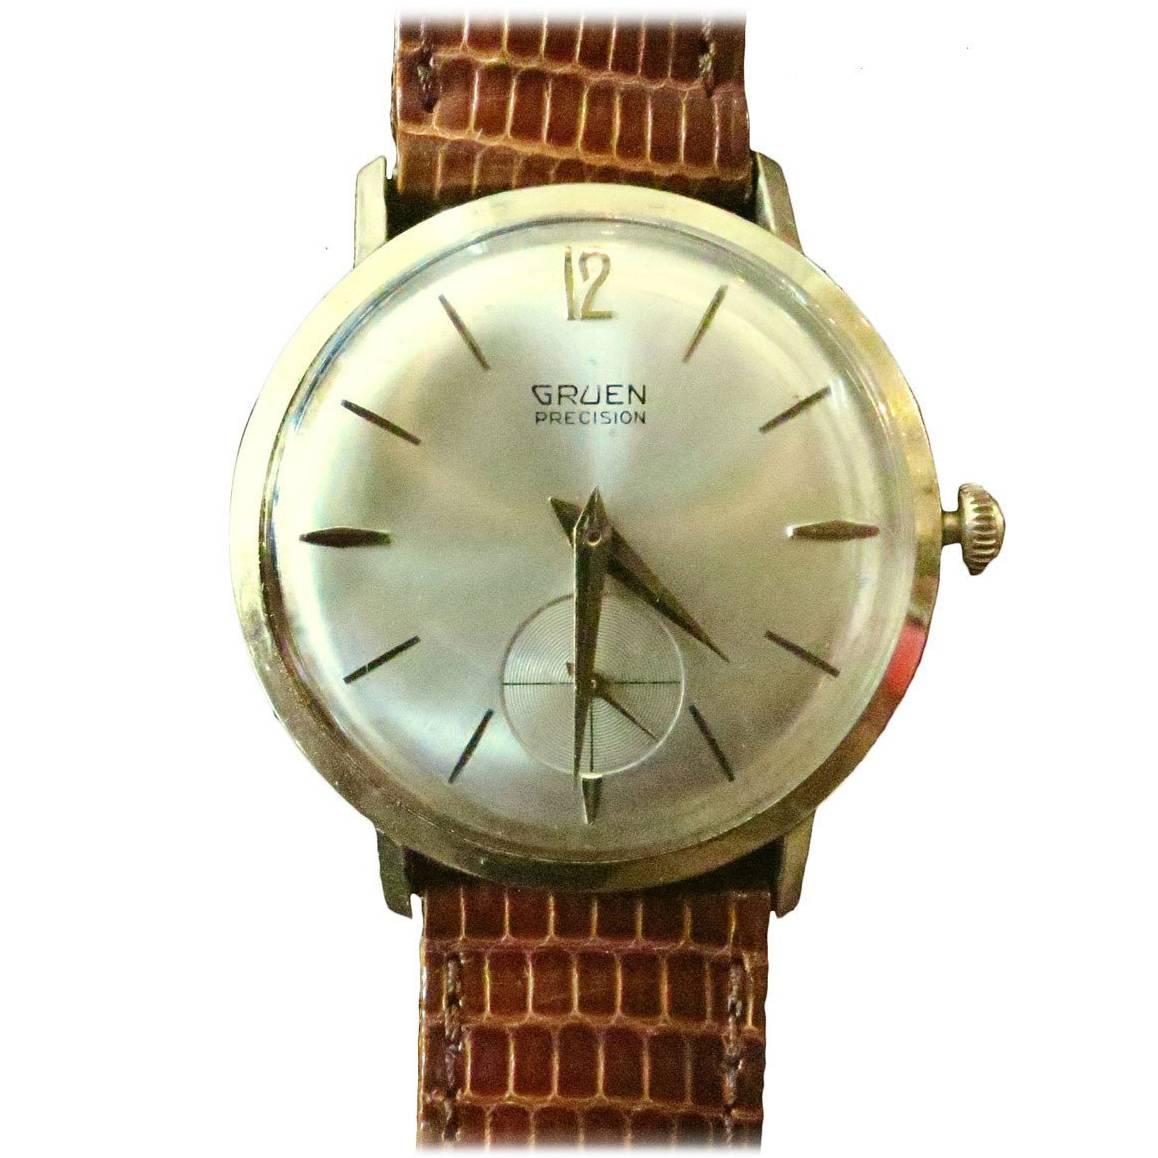 Gruen Precision 14-Karat Solid Gold Watch